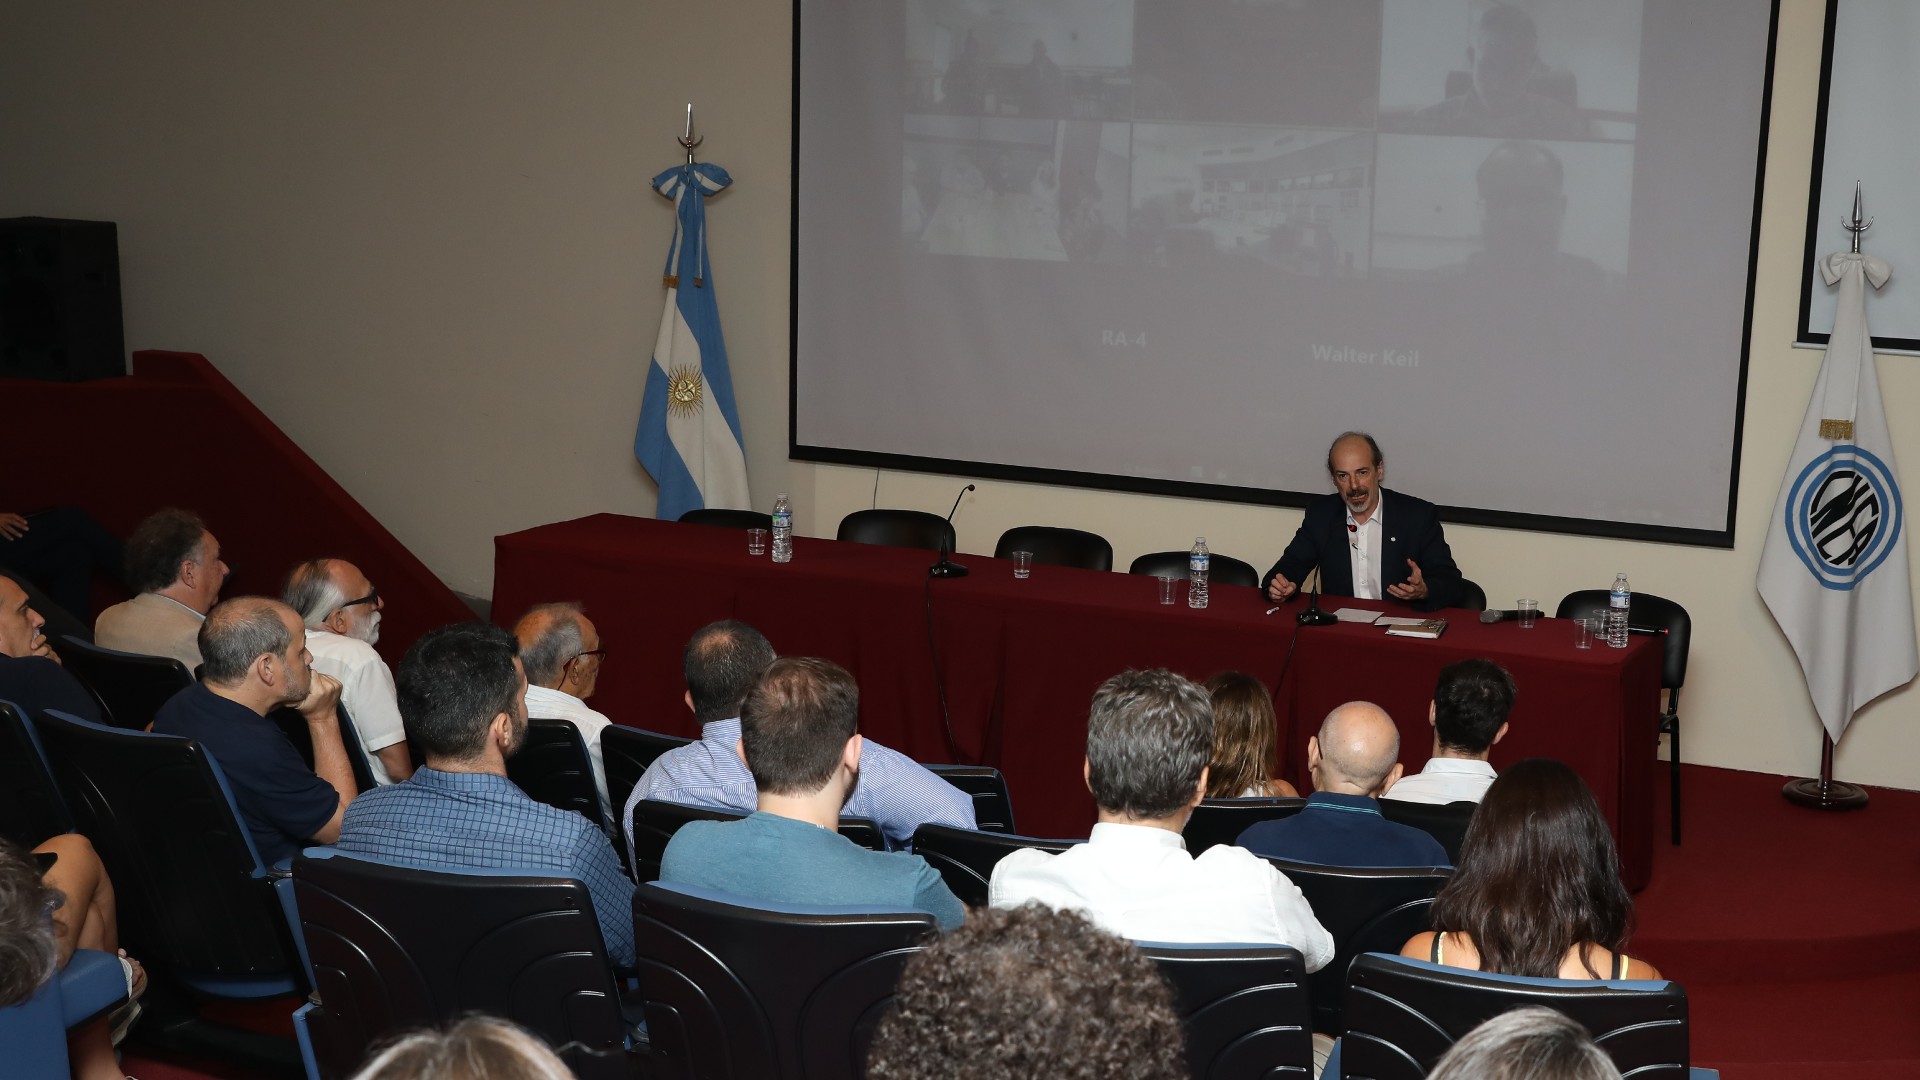 El vicepresidente de la CNEA Diego Hurtado enfatizó la importancia del RA-1 en el sector científico argentino.